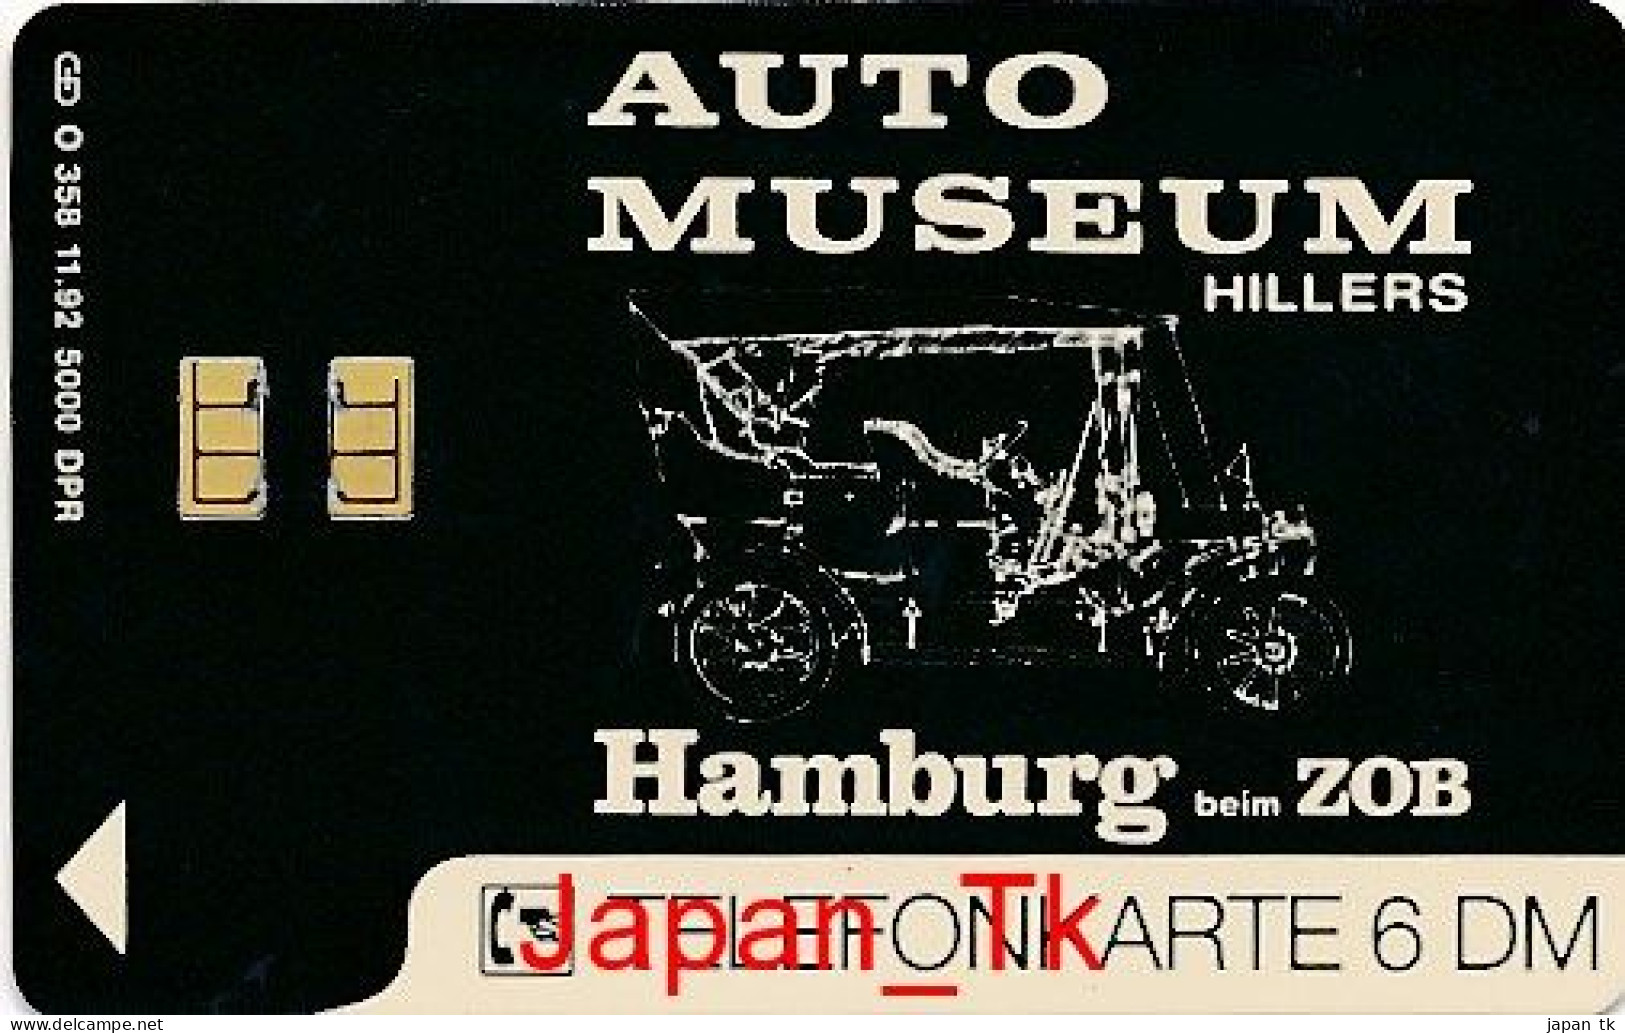 GERMANY O 358 92 Auto Museum  - Aufl  5000 - Siehe Scan - O-Series: Kundenserie Vom Sammlerservice Ausgeschlossen